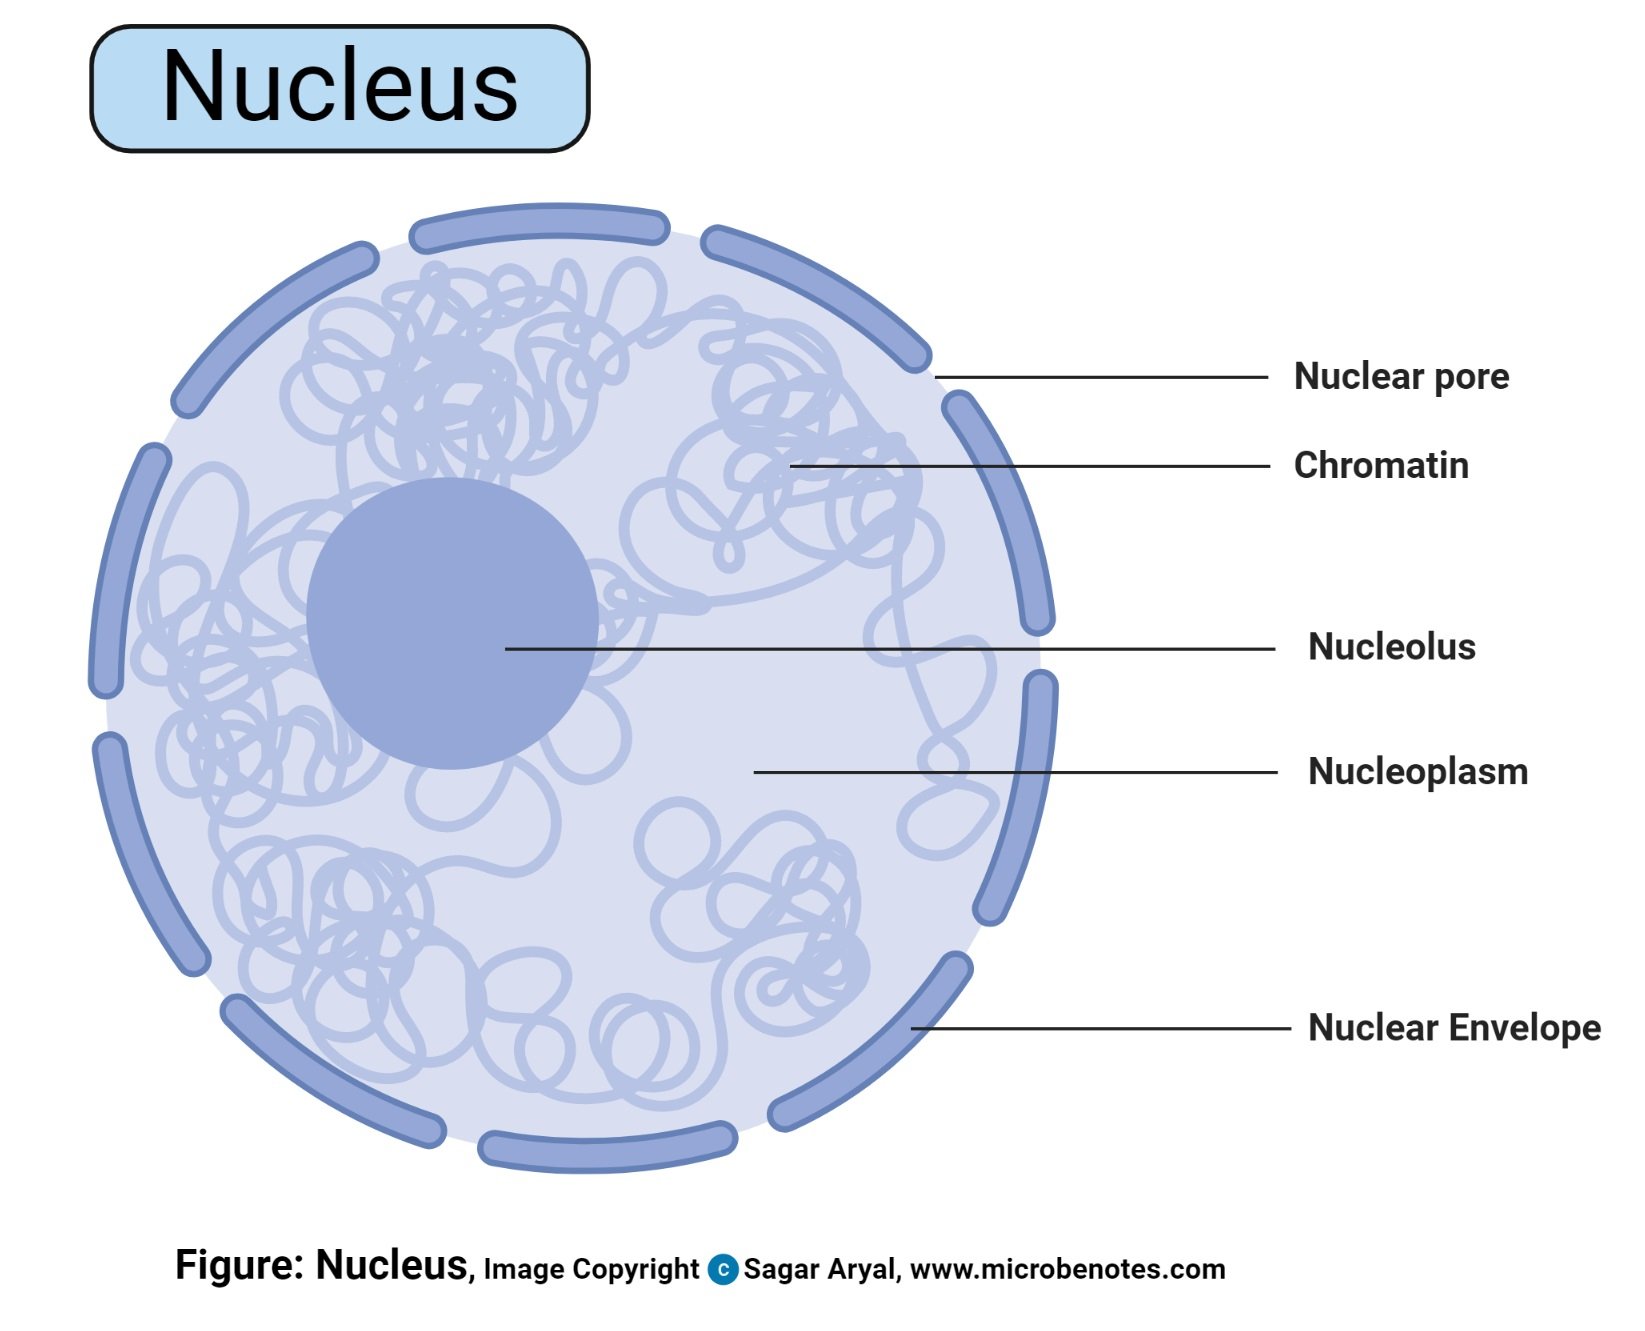 Nucleus- Definition, Structure, Parts, Functions, Diagram